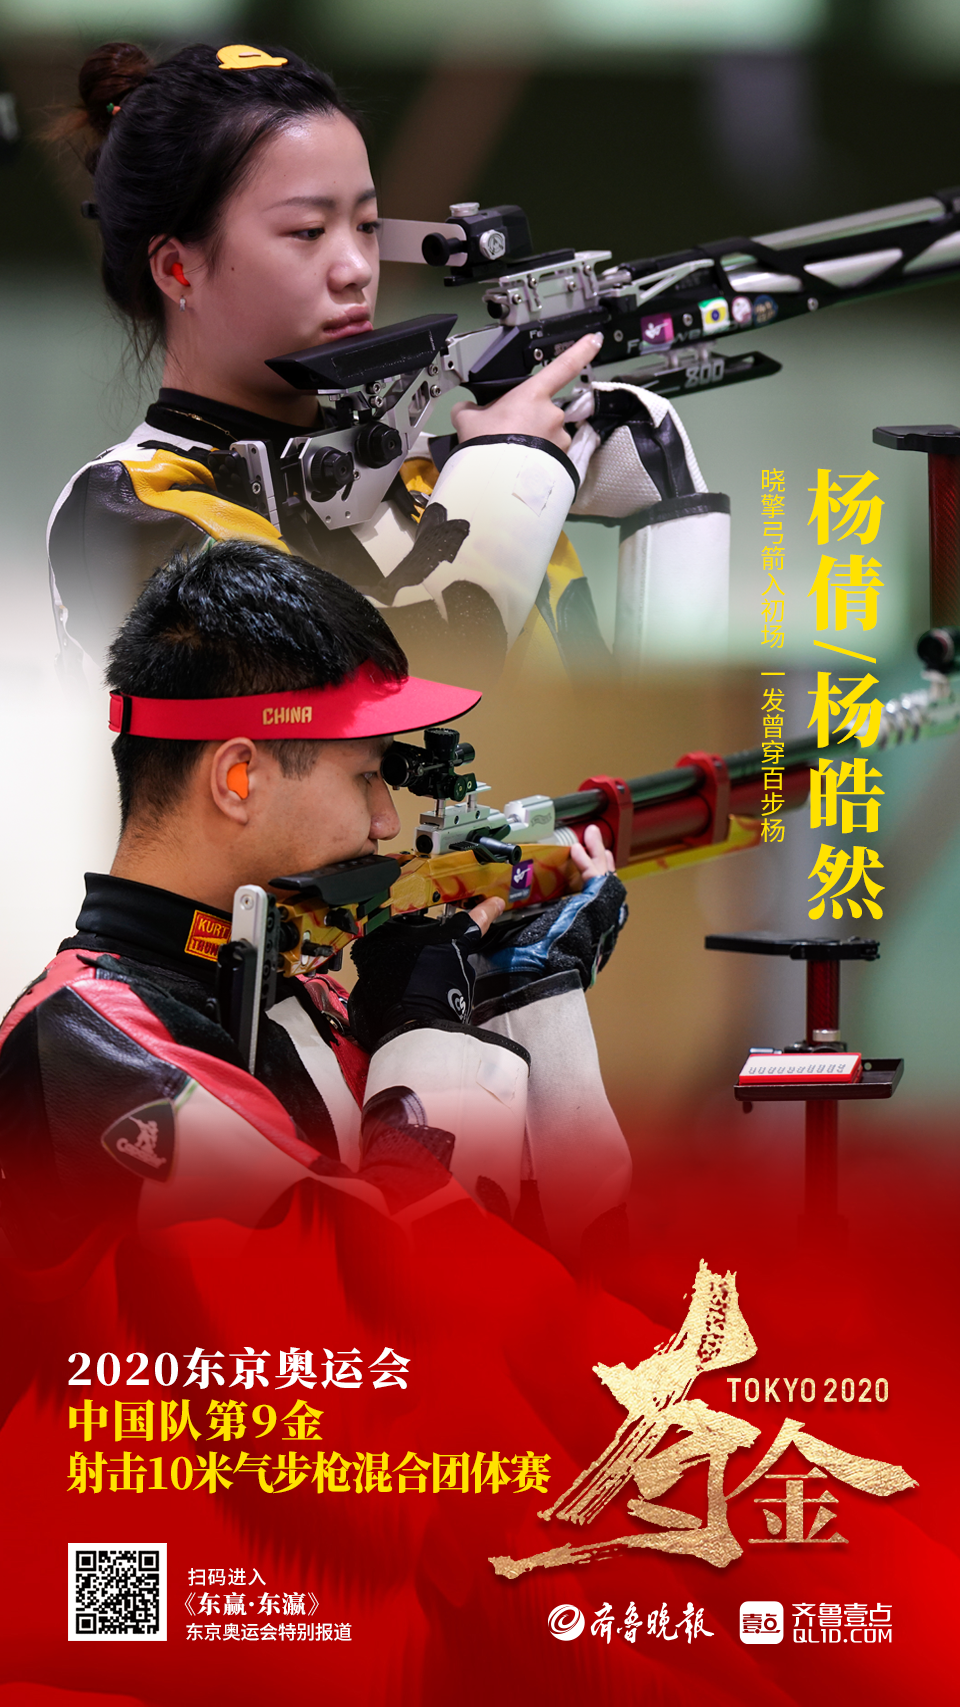 7月27日下午2点50分,2020东京奥运会射击混合团体10米气步枪金牌赛